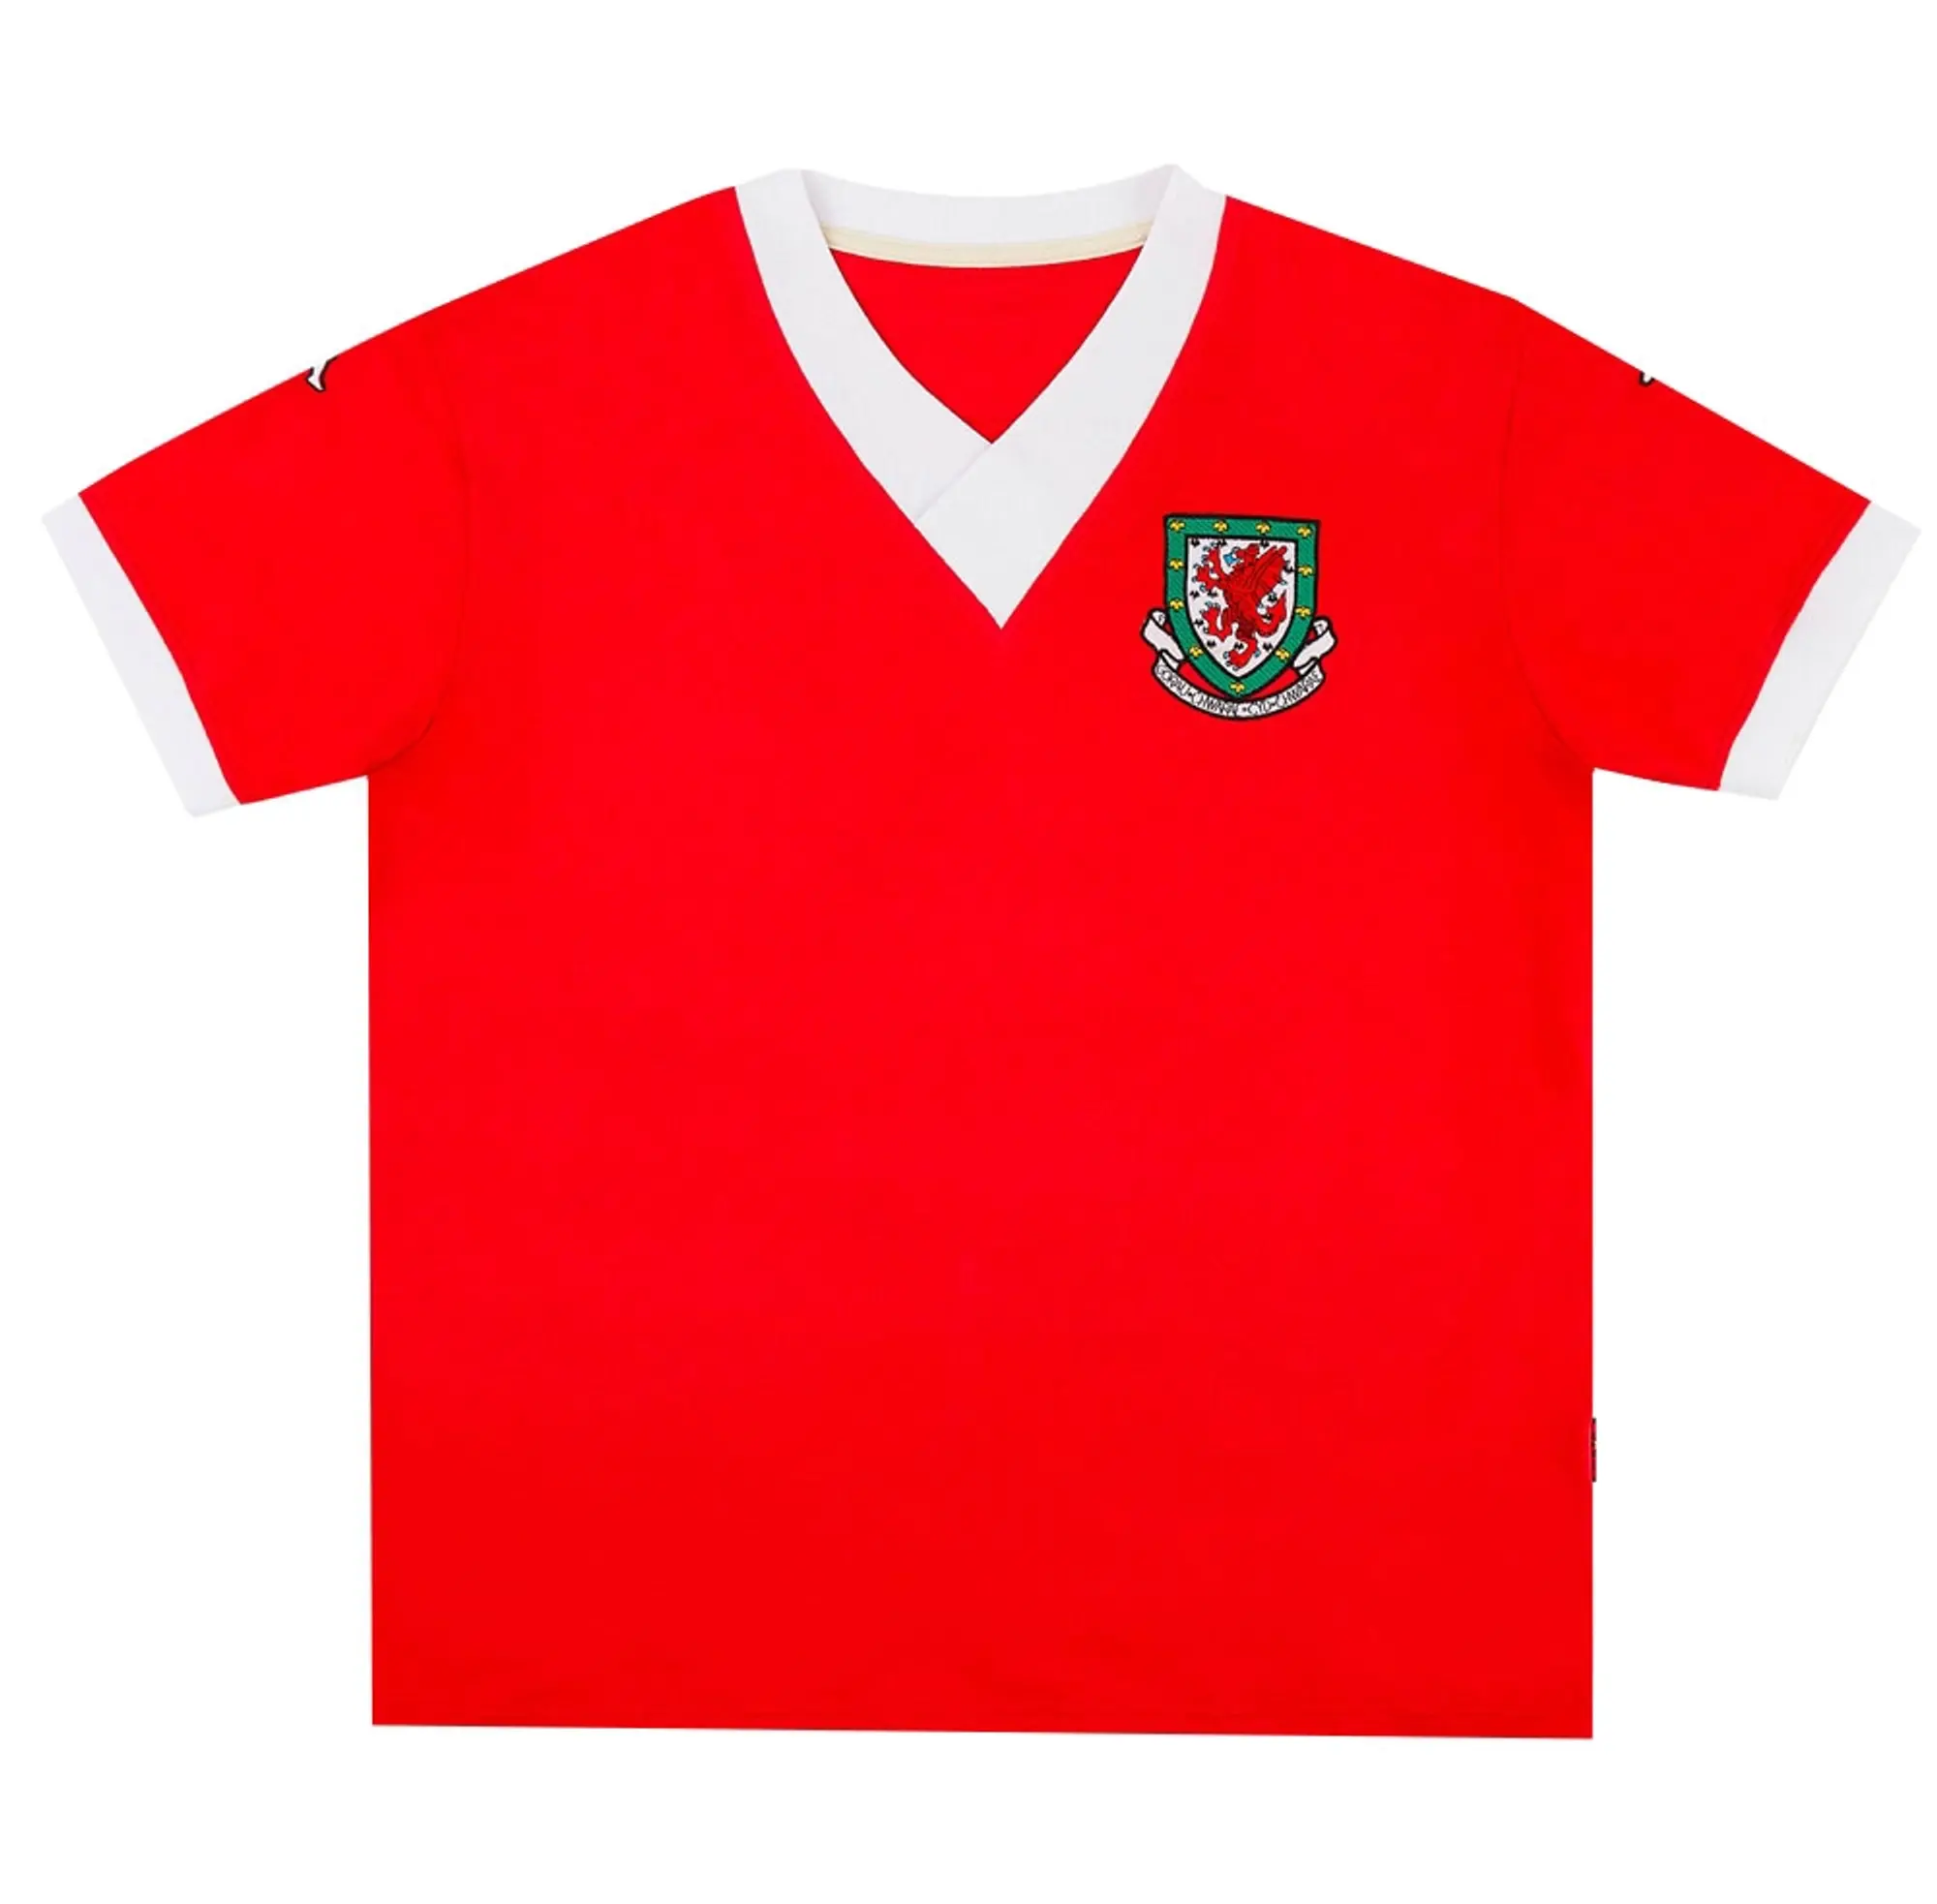 Kappa Wales Mens SS Home Shirt 2006